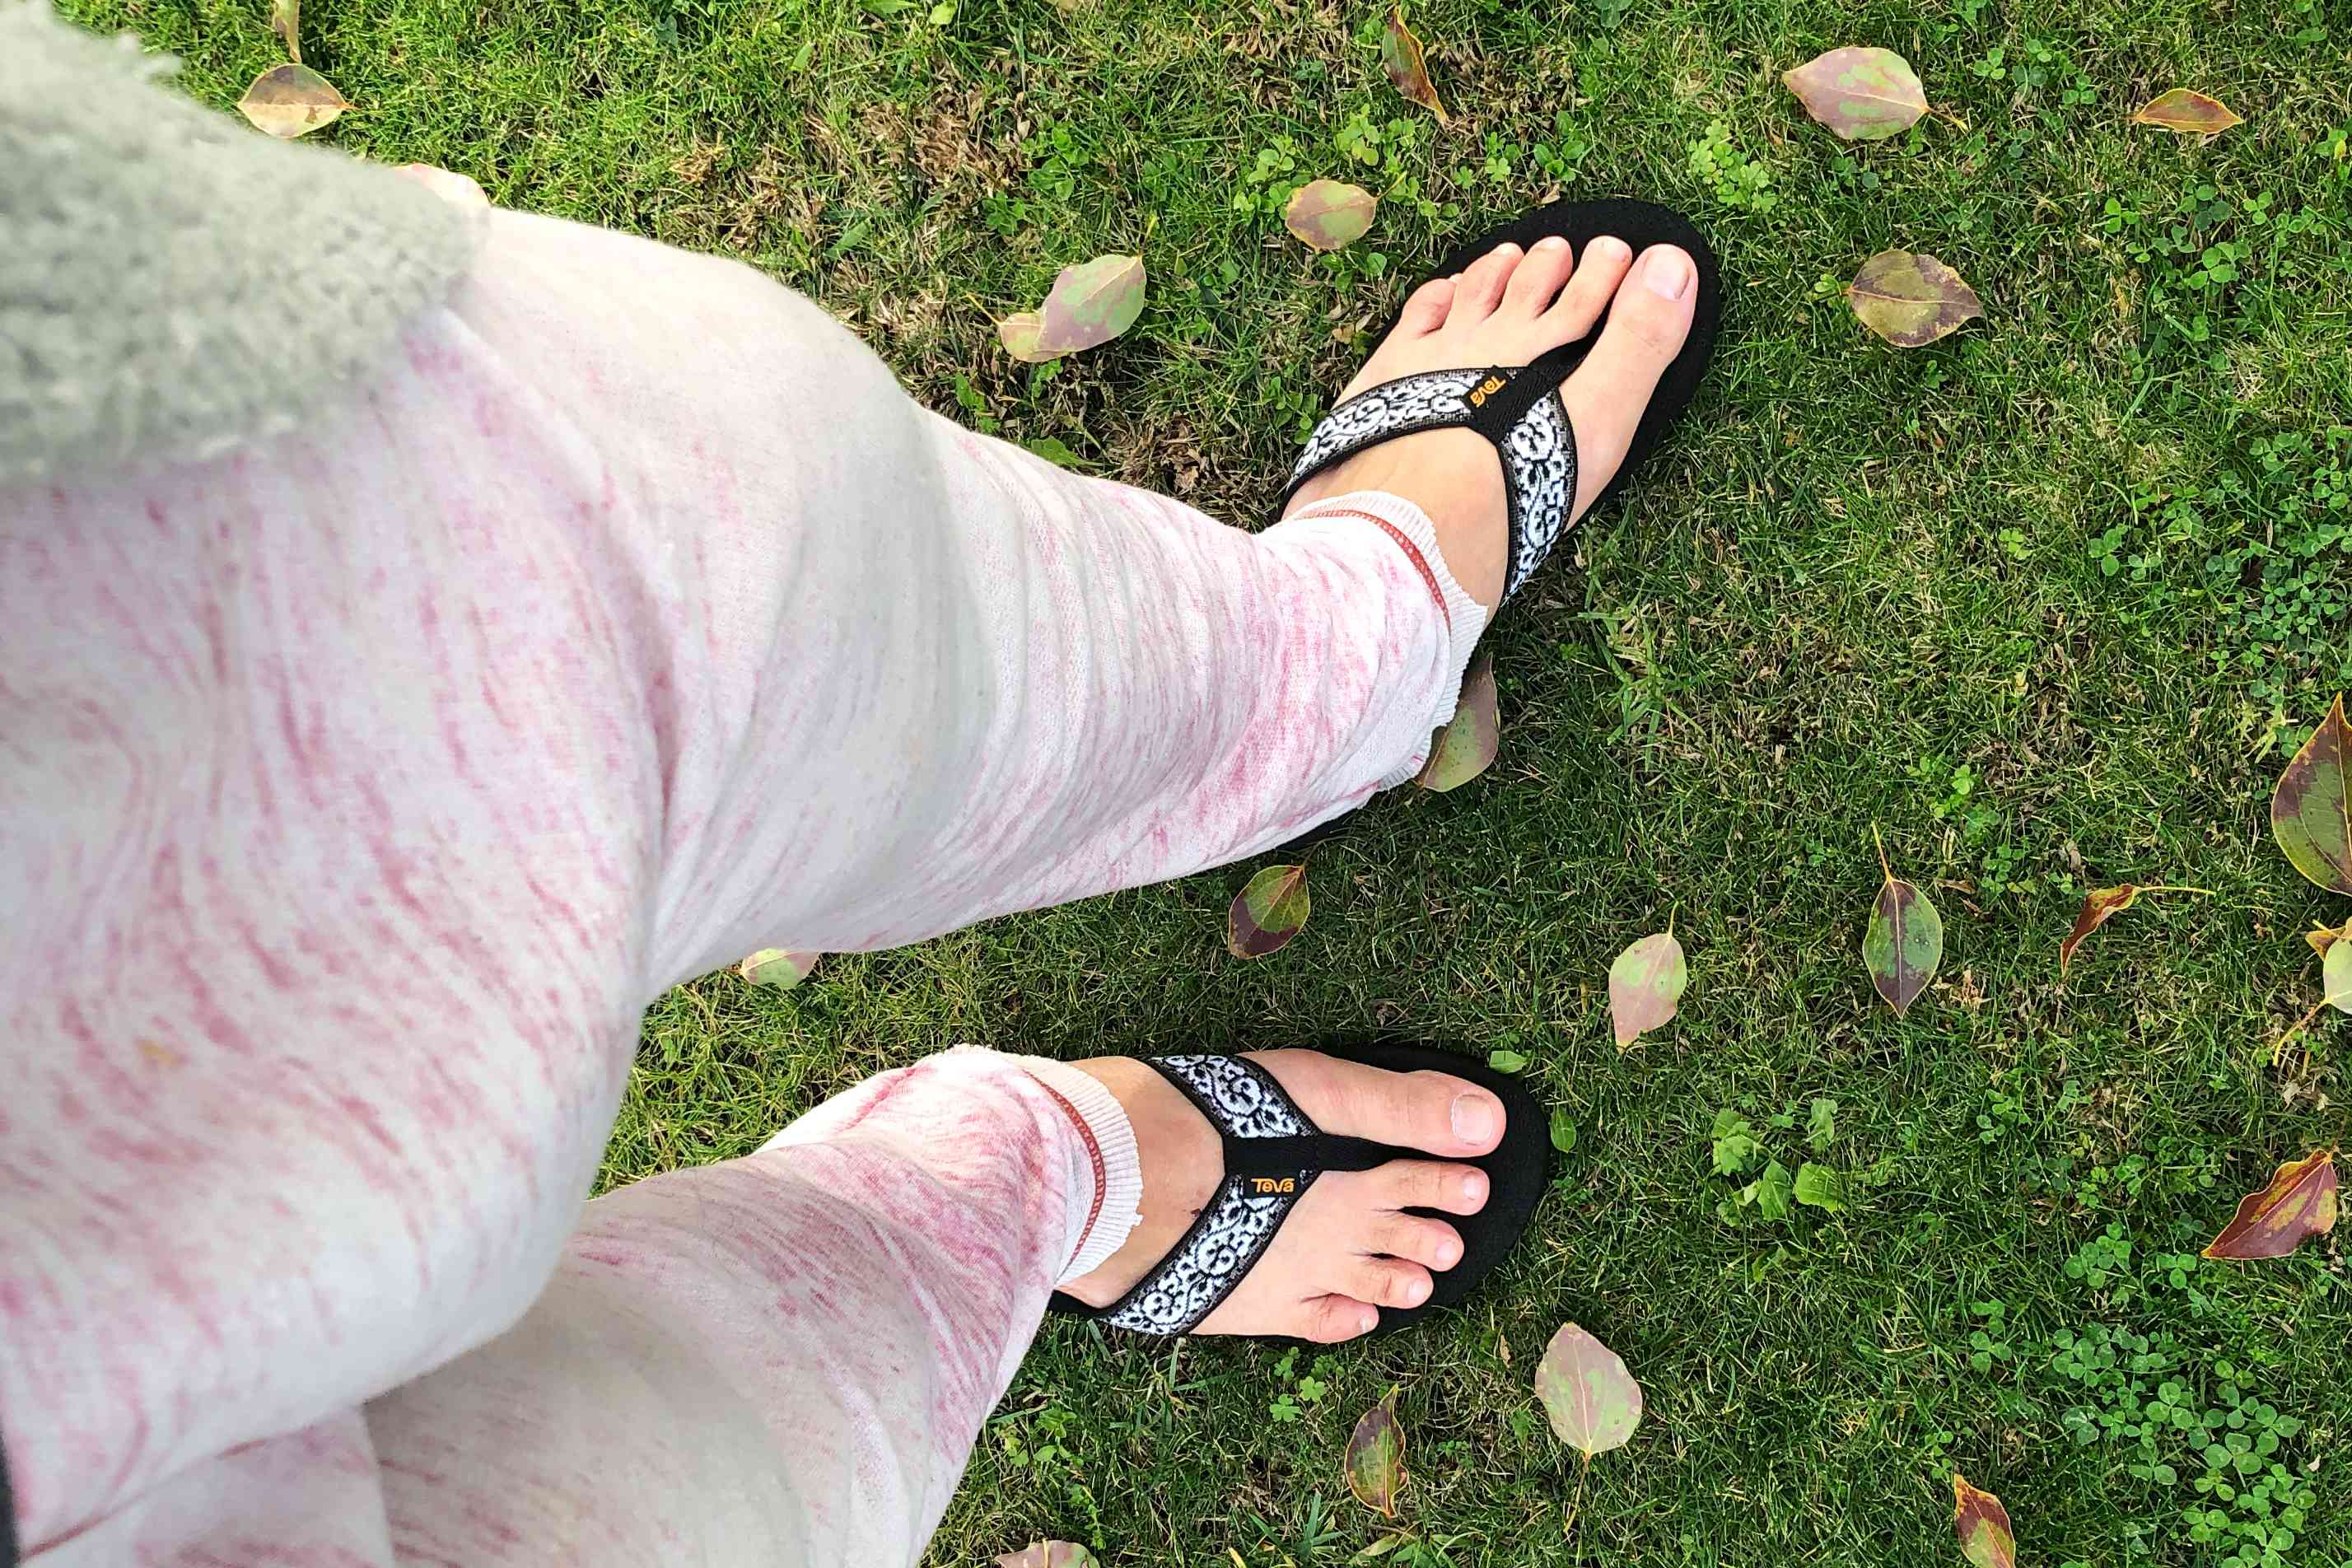 Feet wearing the Teva Womens Mush II Flip Flops on grass 